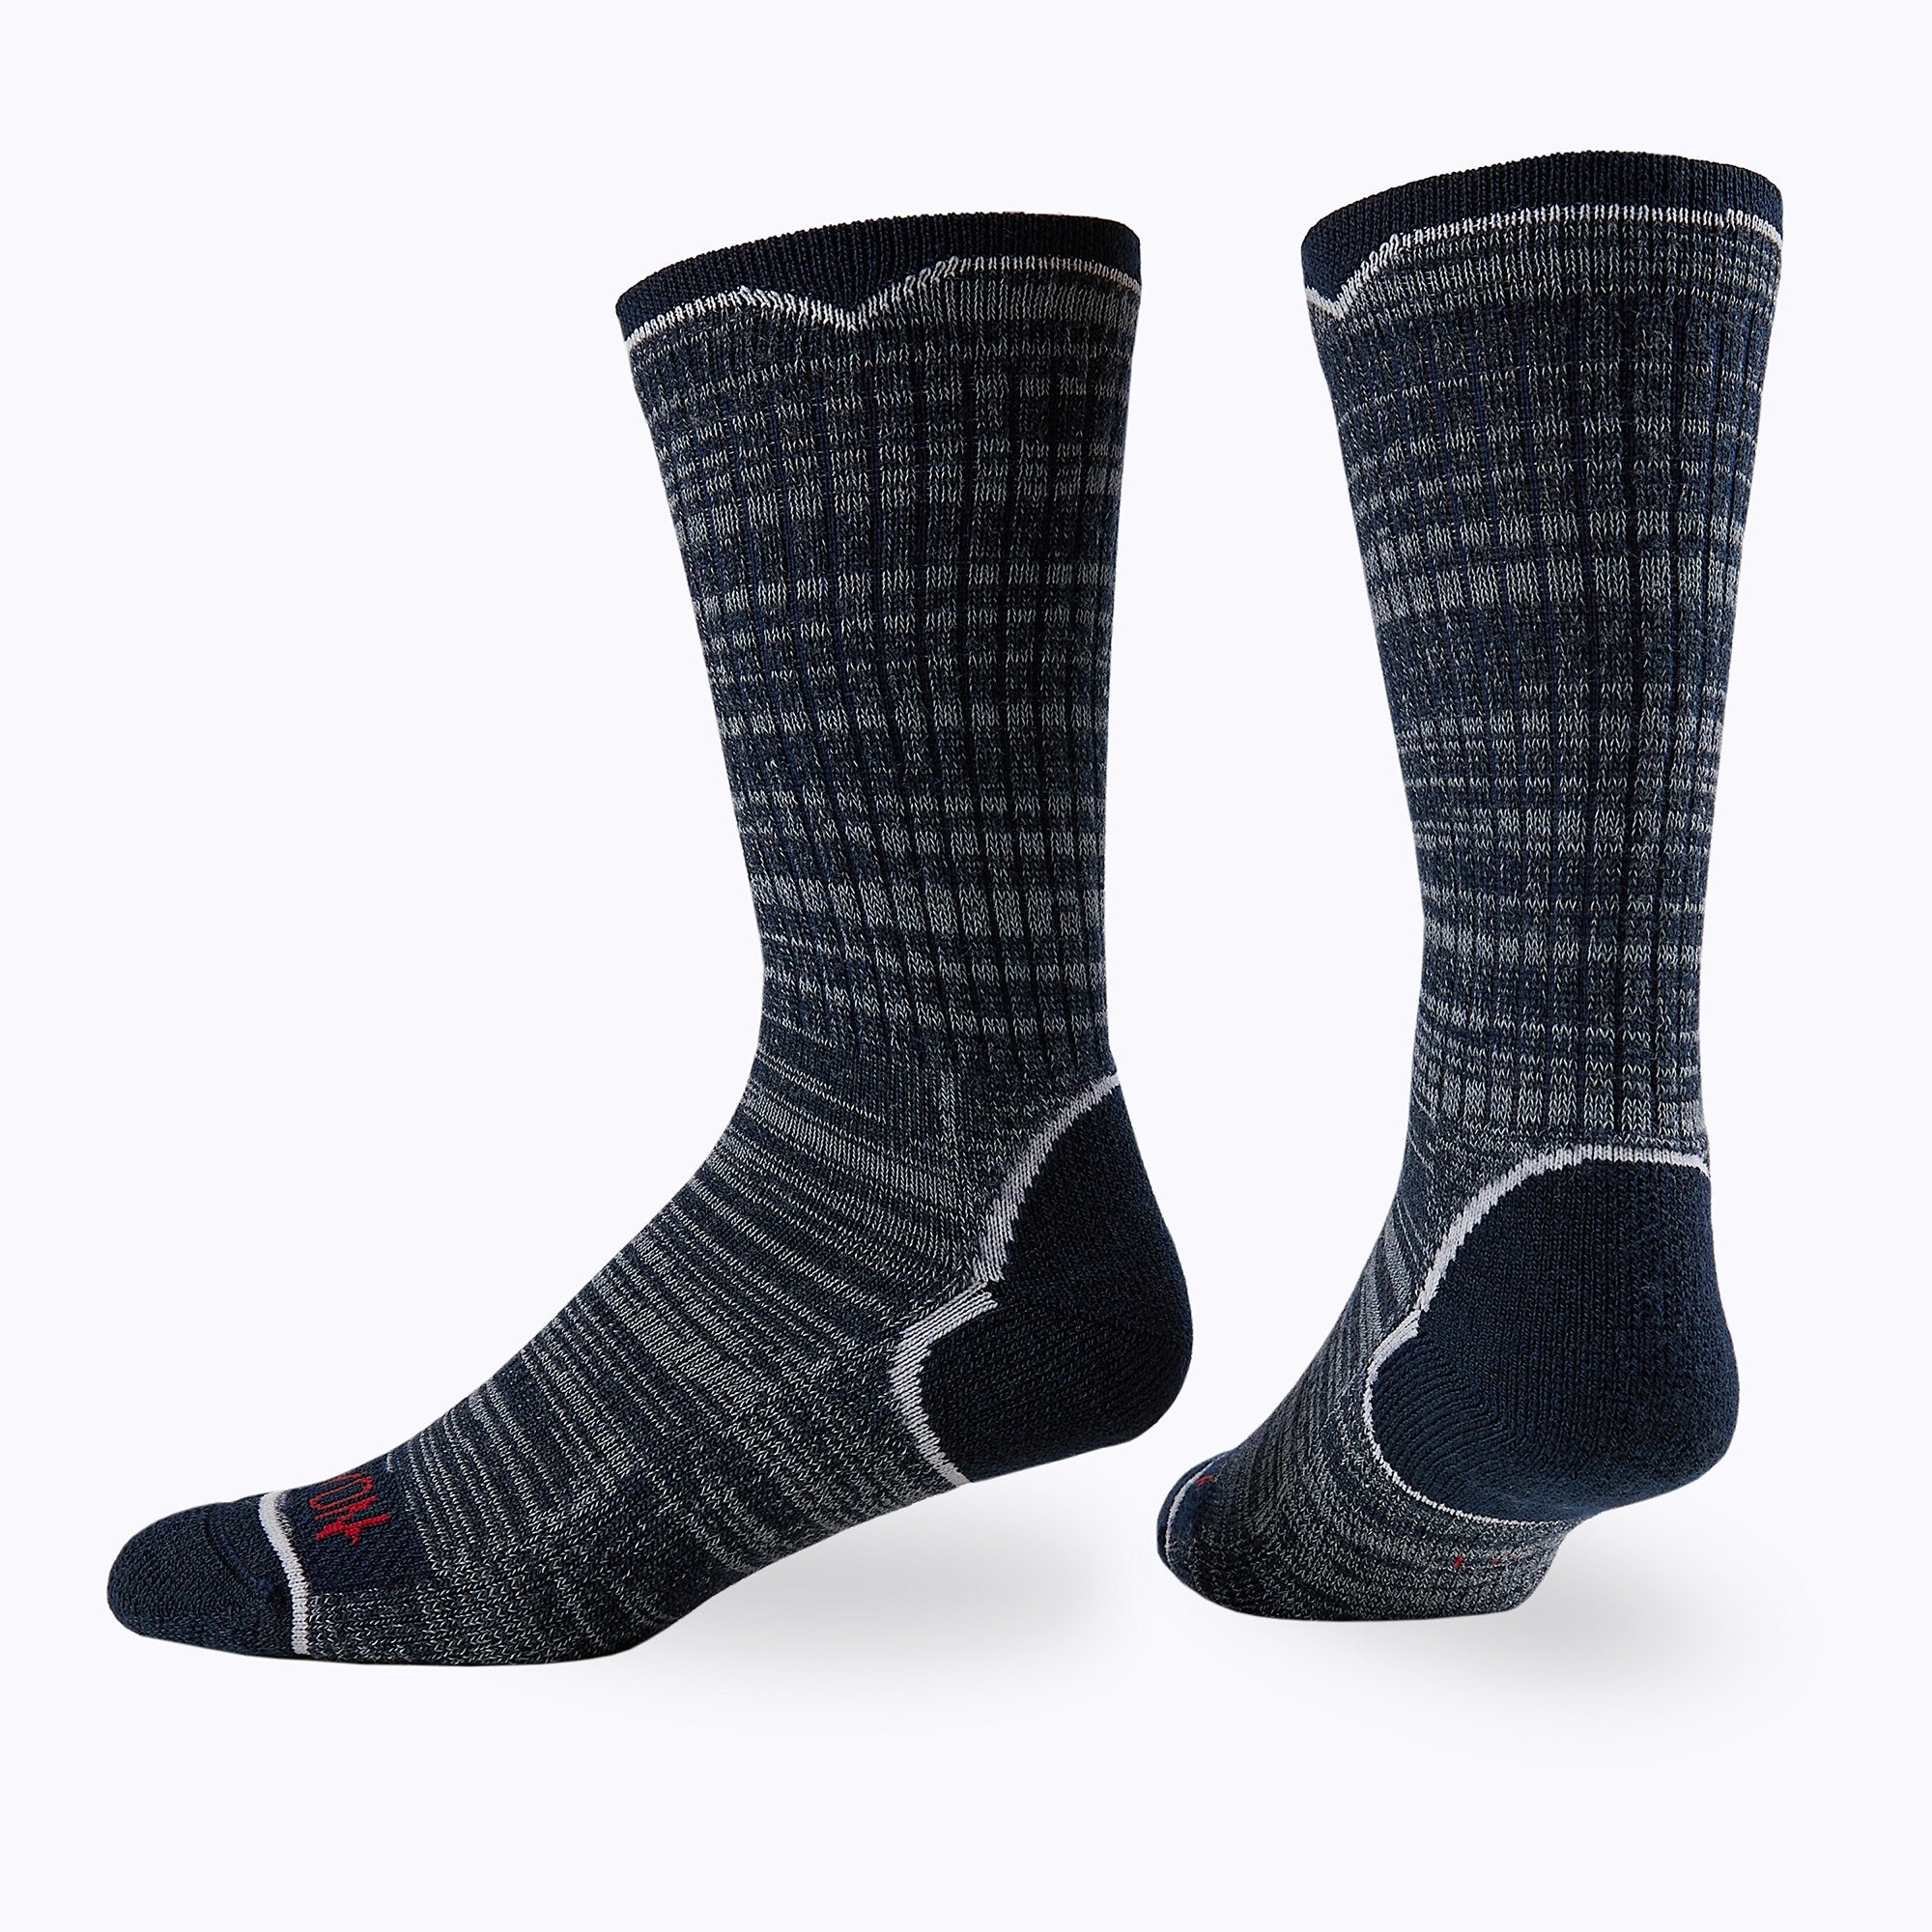 James Mid Calf Sock 2 Pack Mix Mens Socks - Capitan Boots